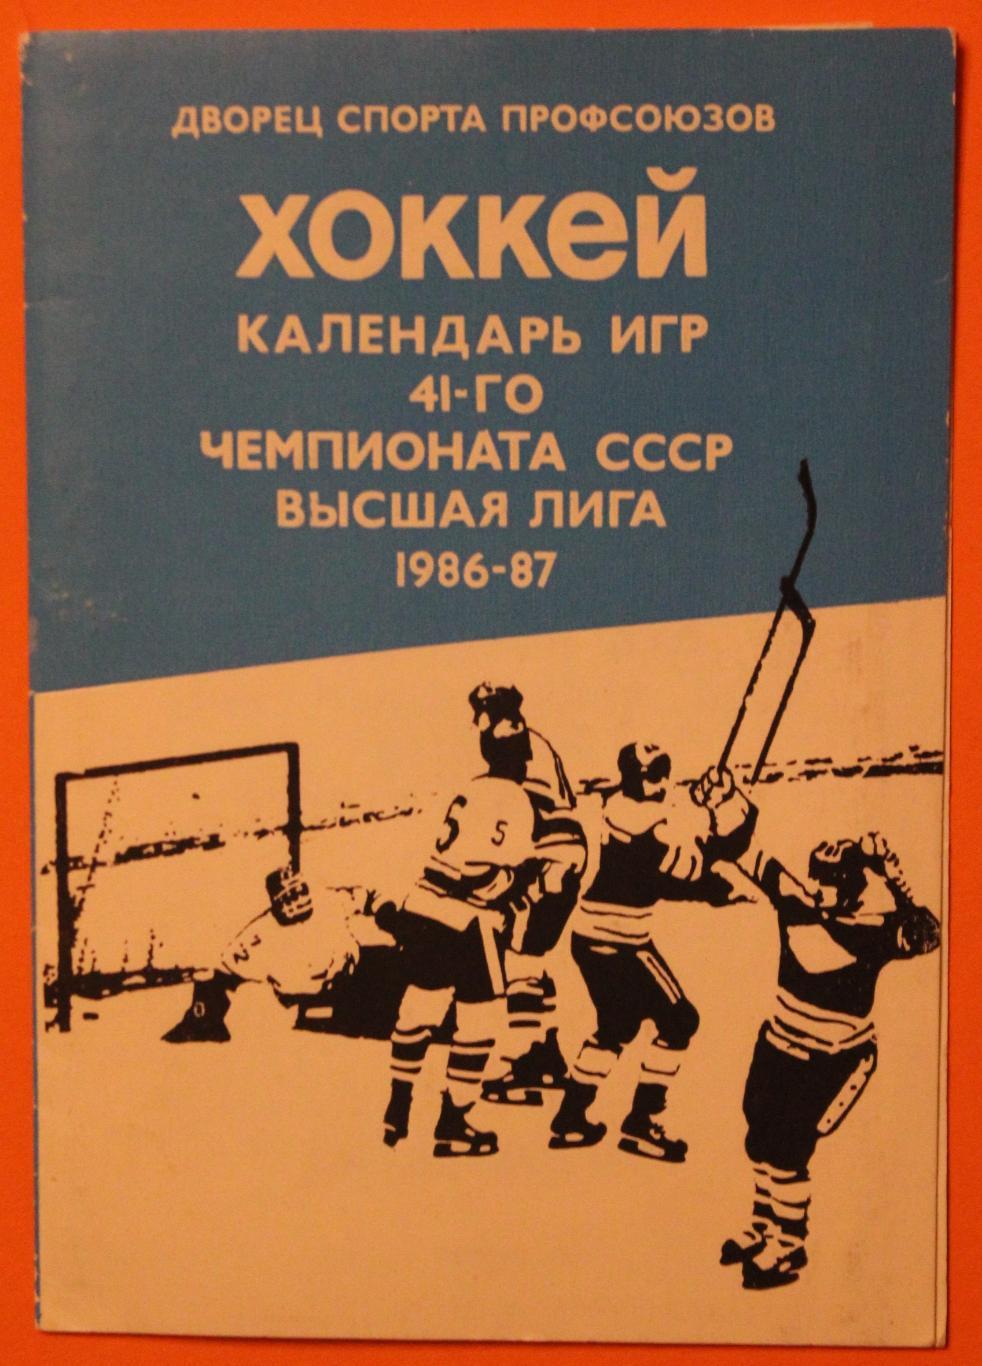 Хоккей Дворец спорта профсоюзов (Свердловск) календарь высшей лиги 1986-87